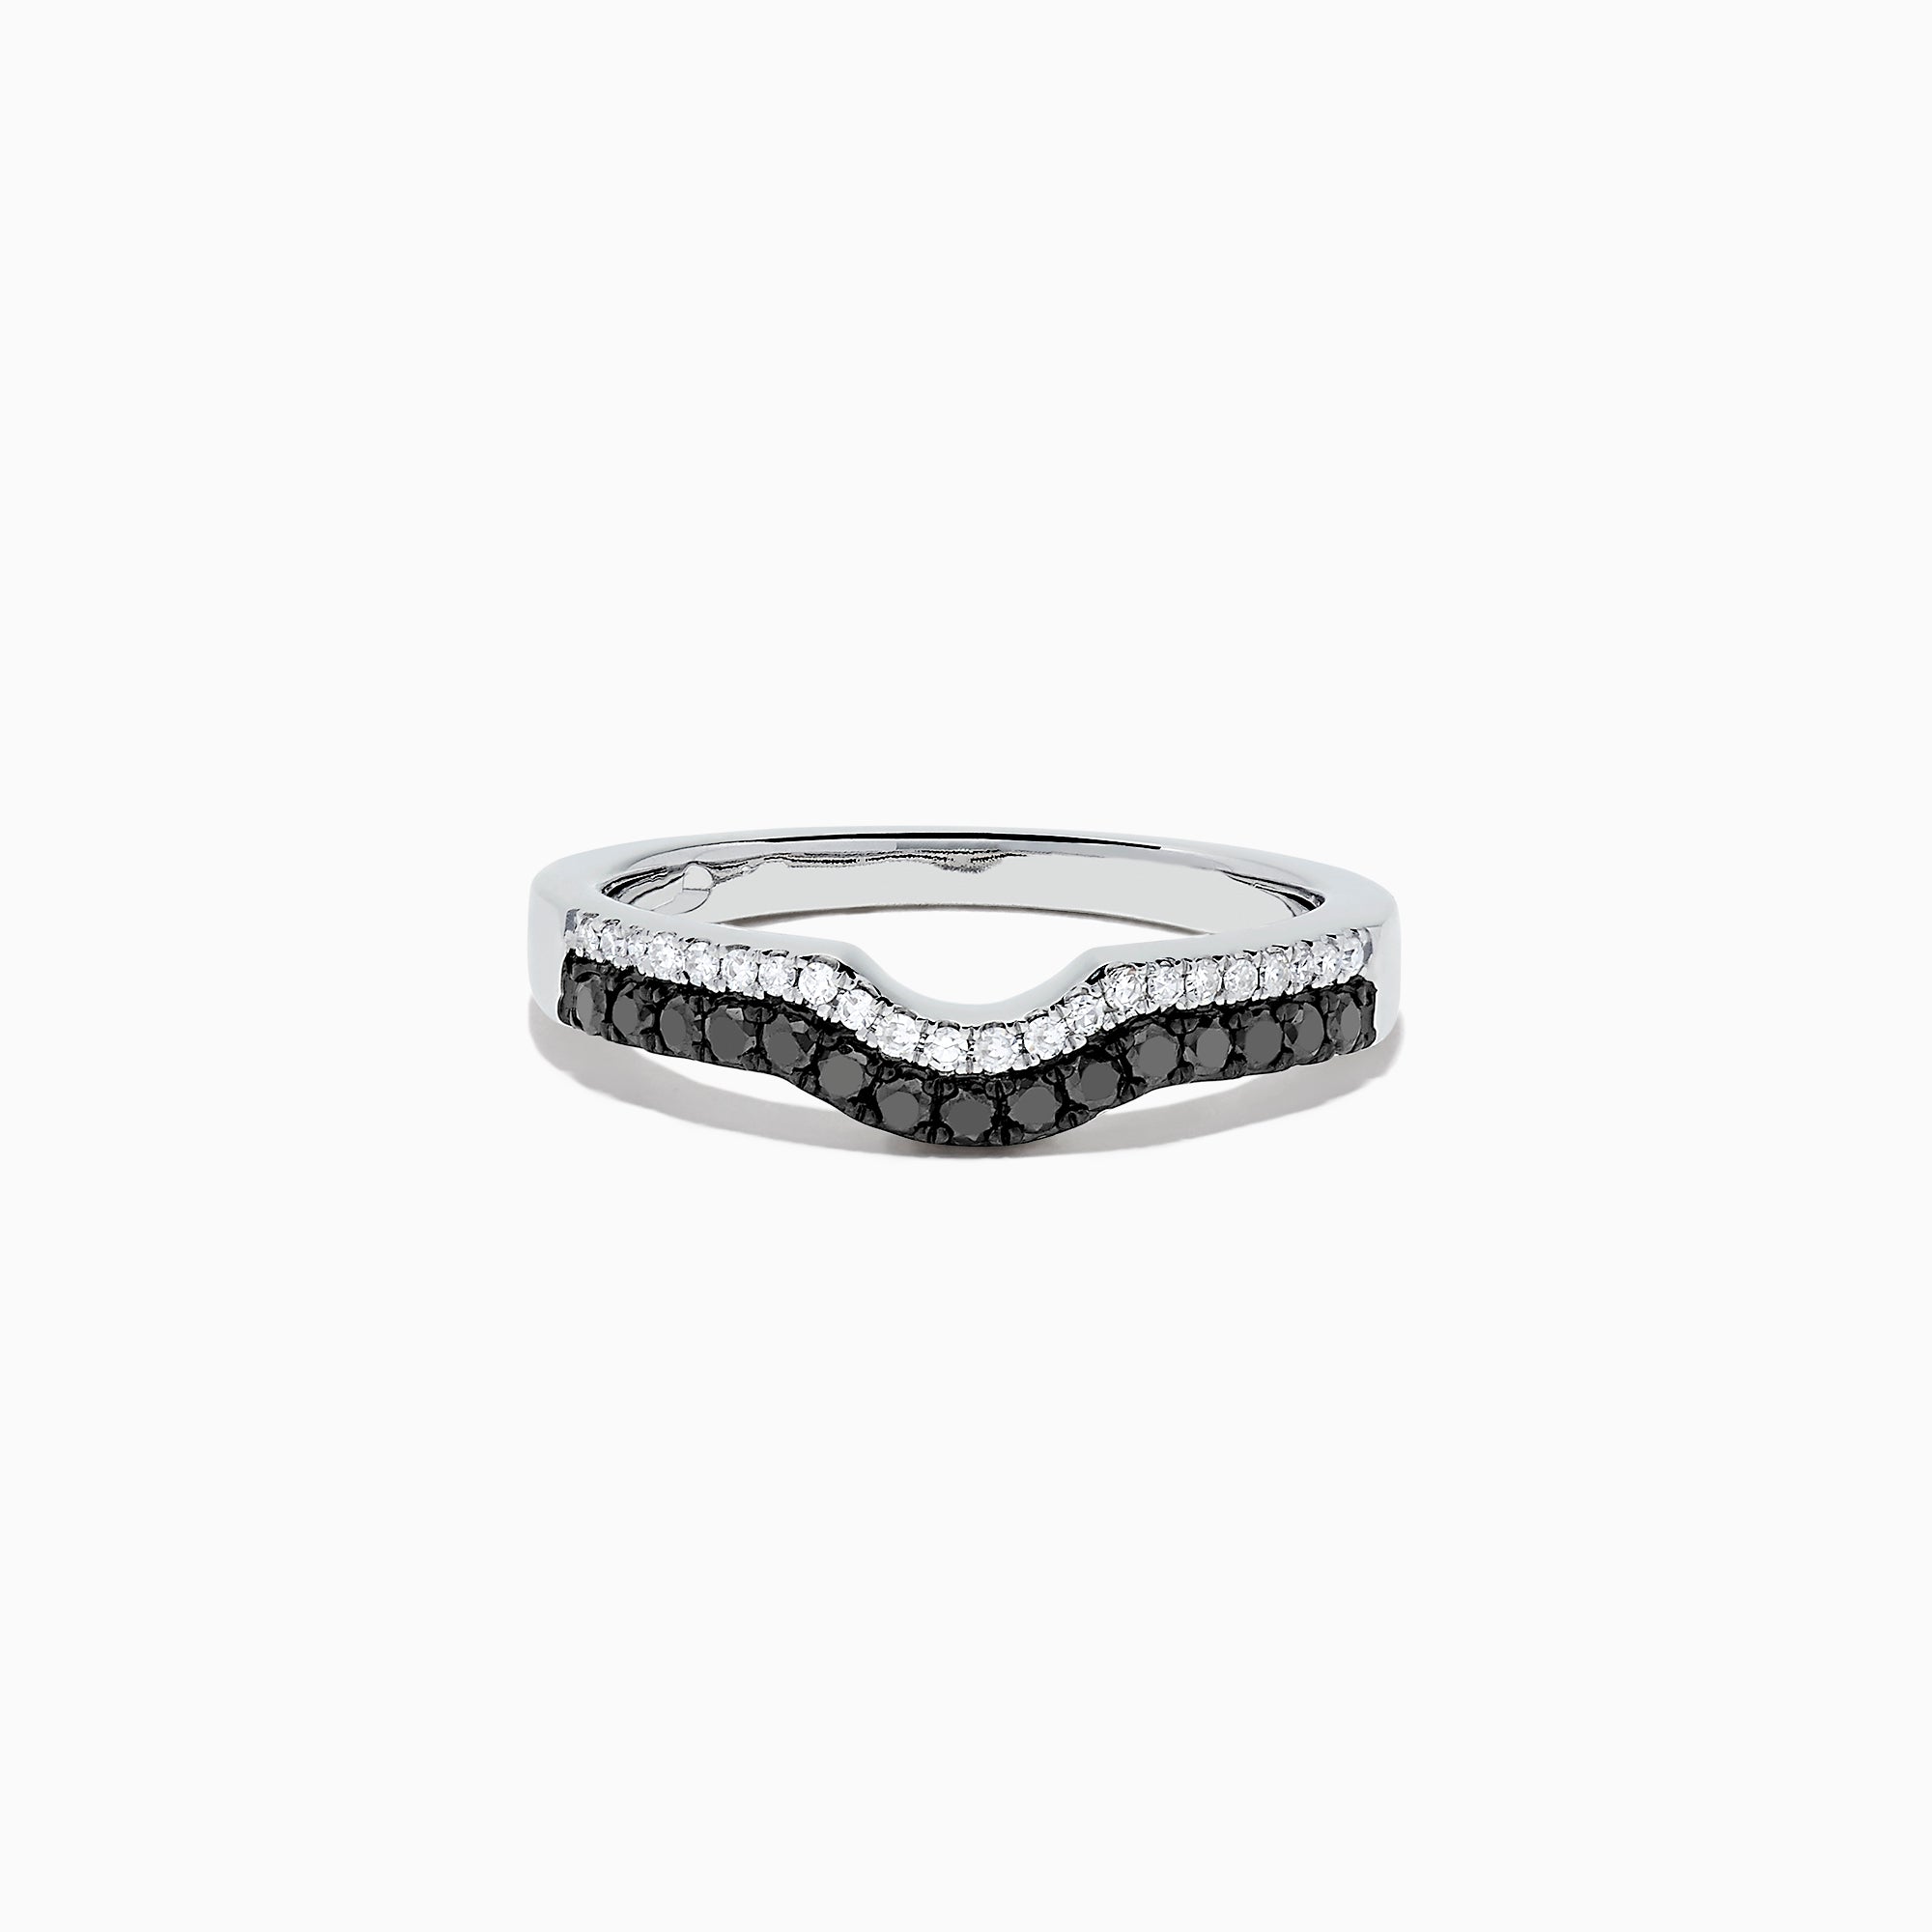 Effy 14K White Gold Black and White Diamond Ring, 0.32 TCW